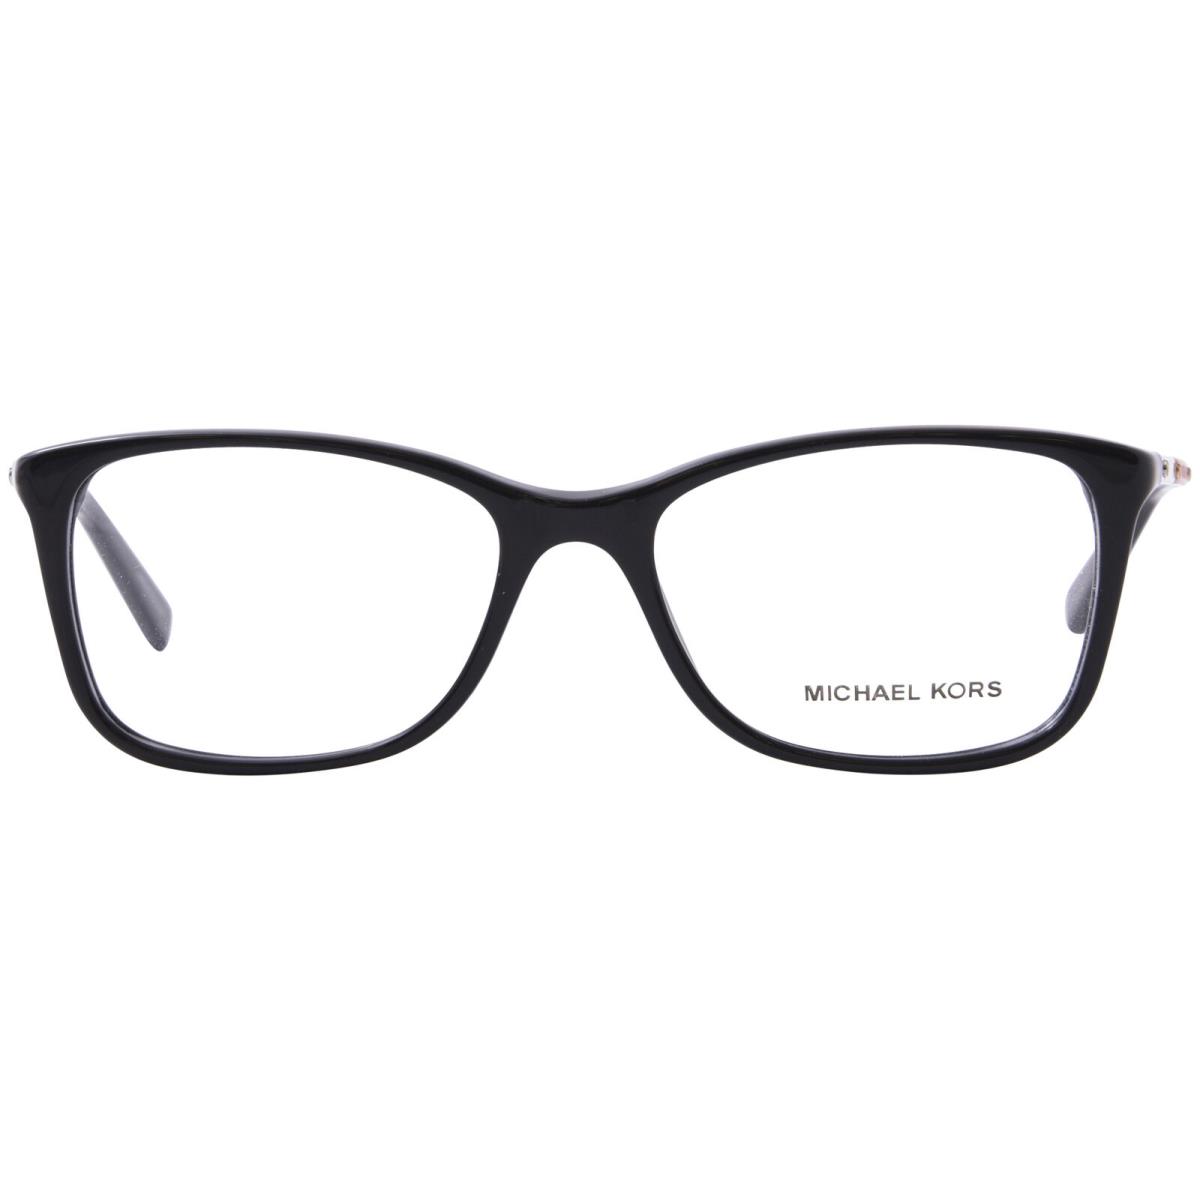 Michael Kors Antibes MK4016 3298 Eyeglasses Women`s Black Rectangle Shape 53mm